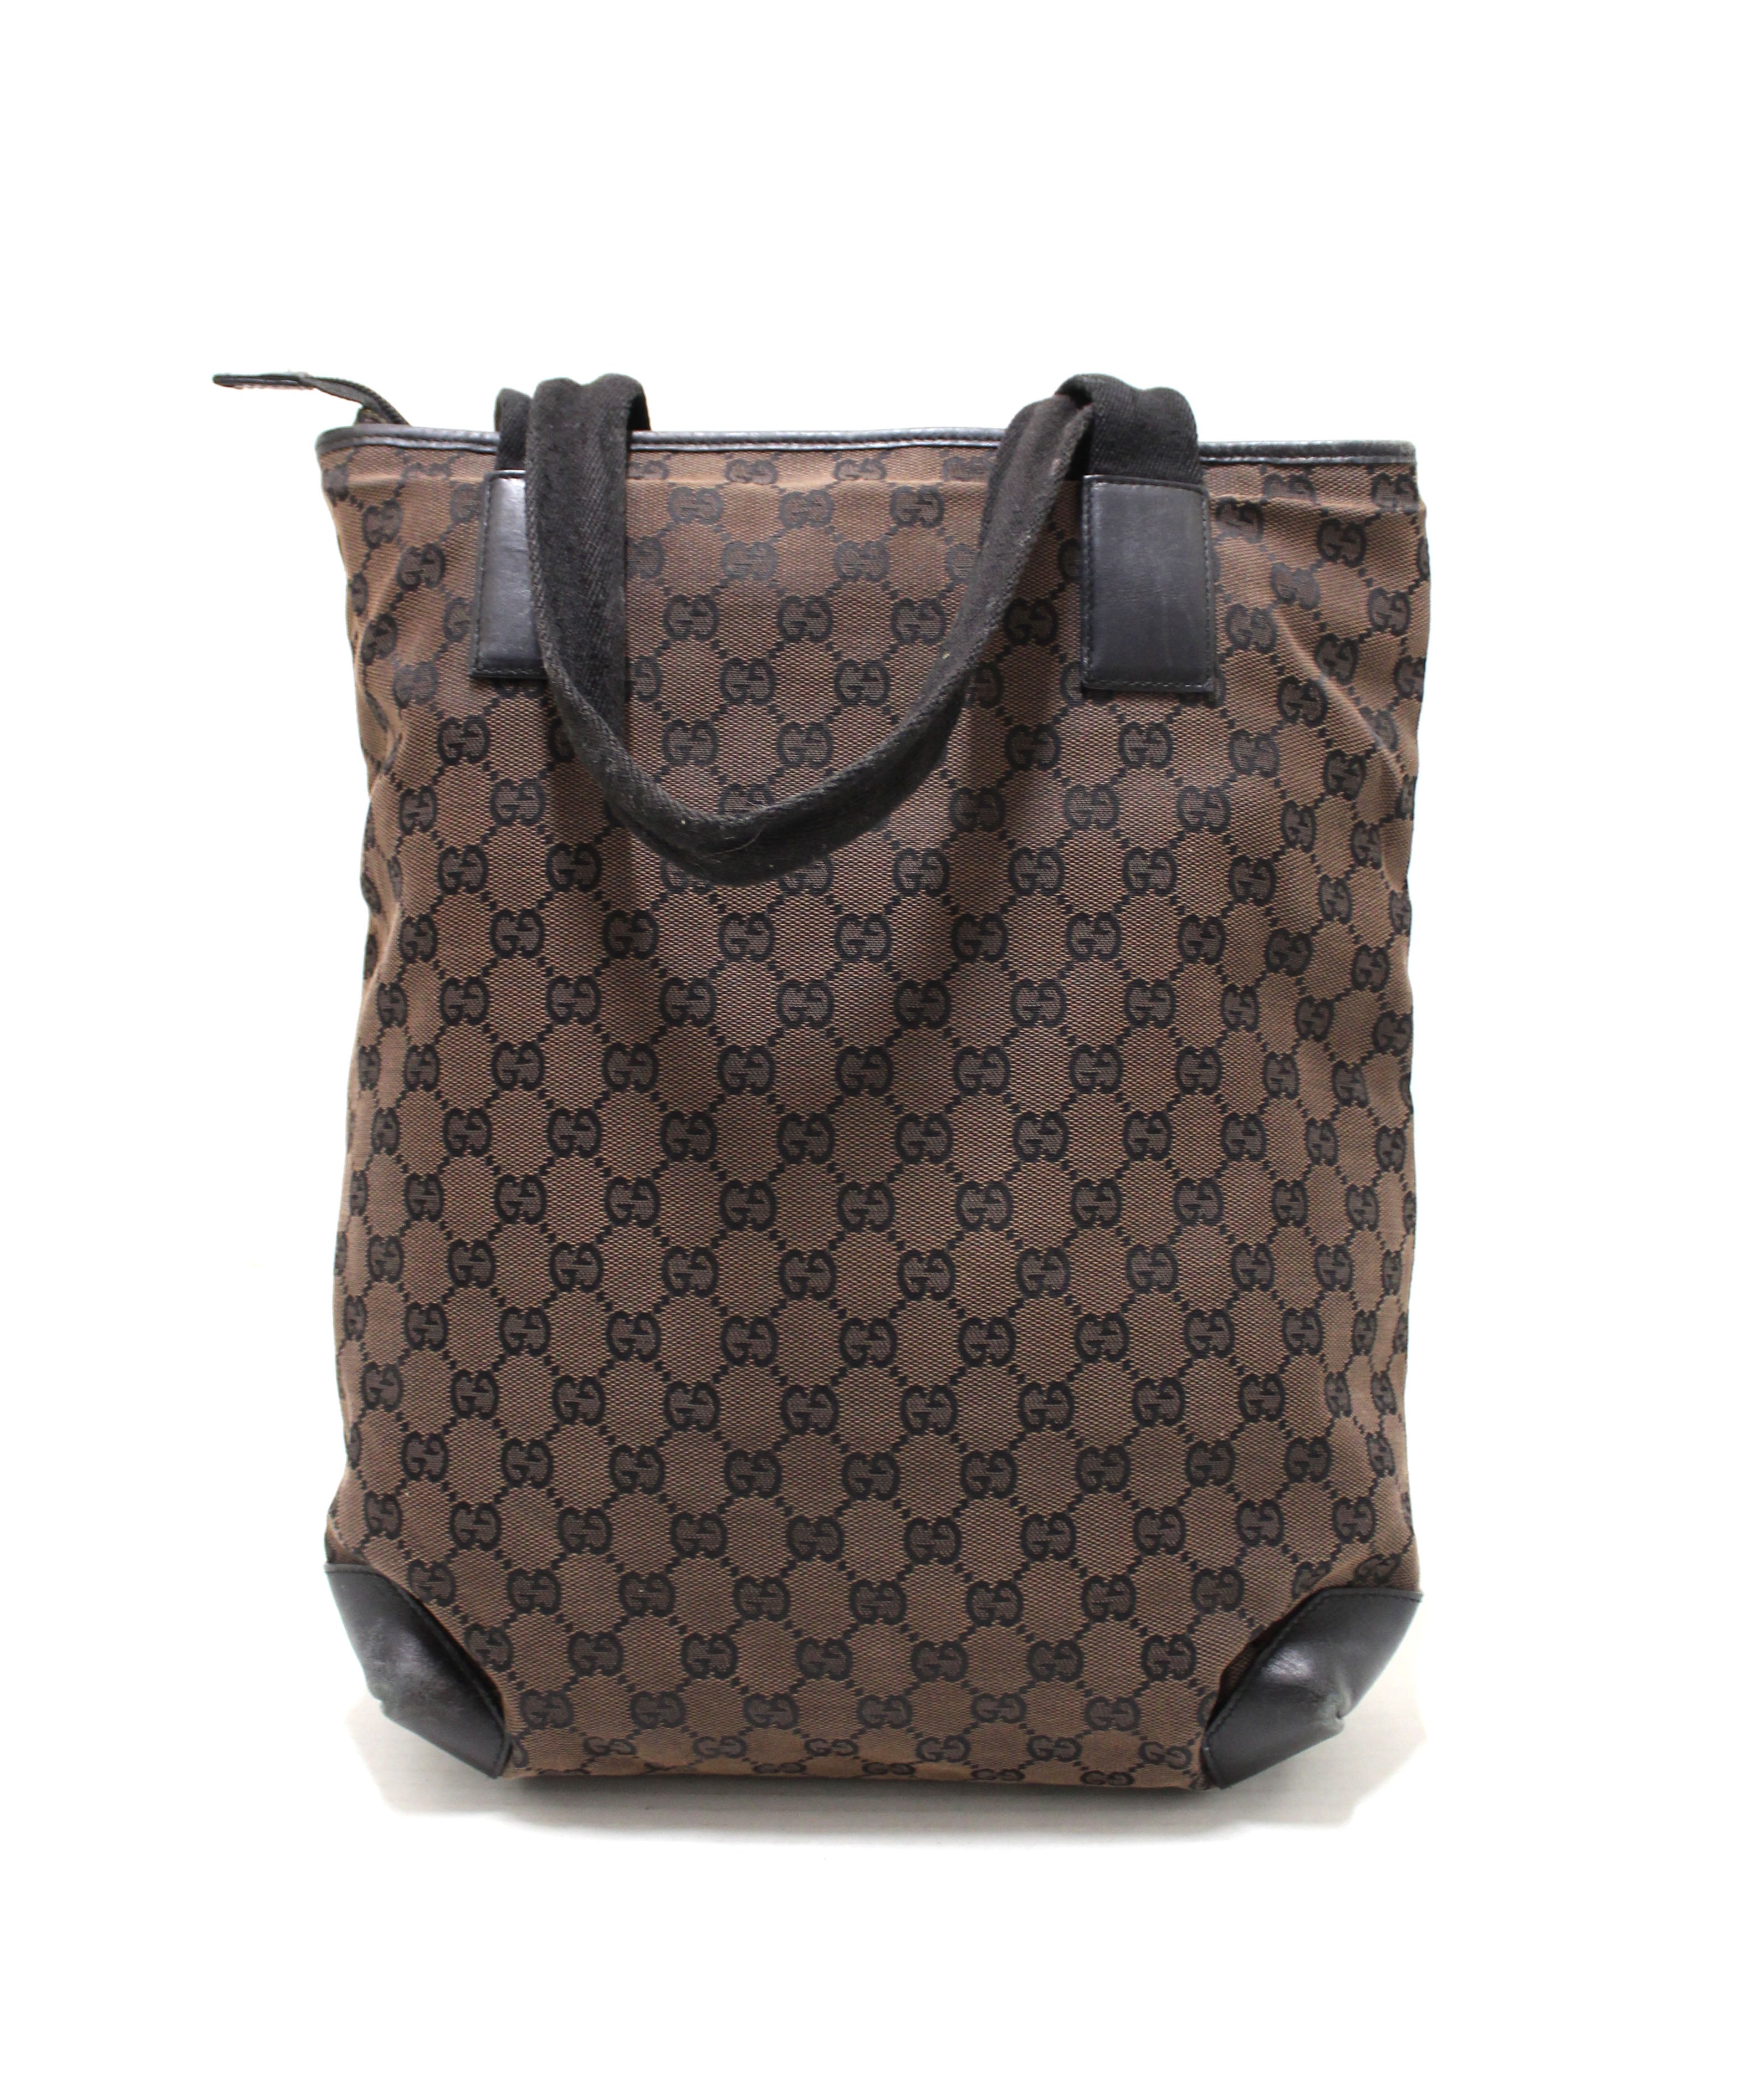 Gucci Men's Retro GG Canvas Tote Bag